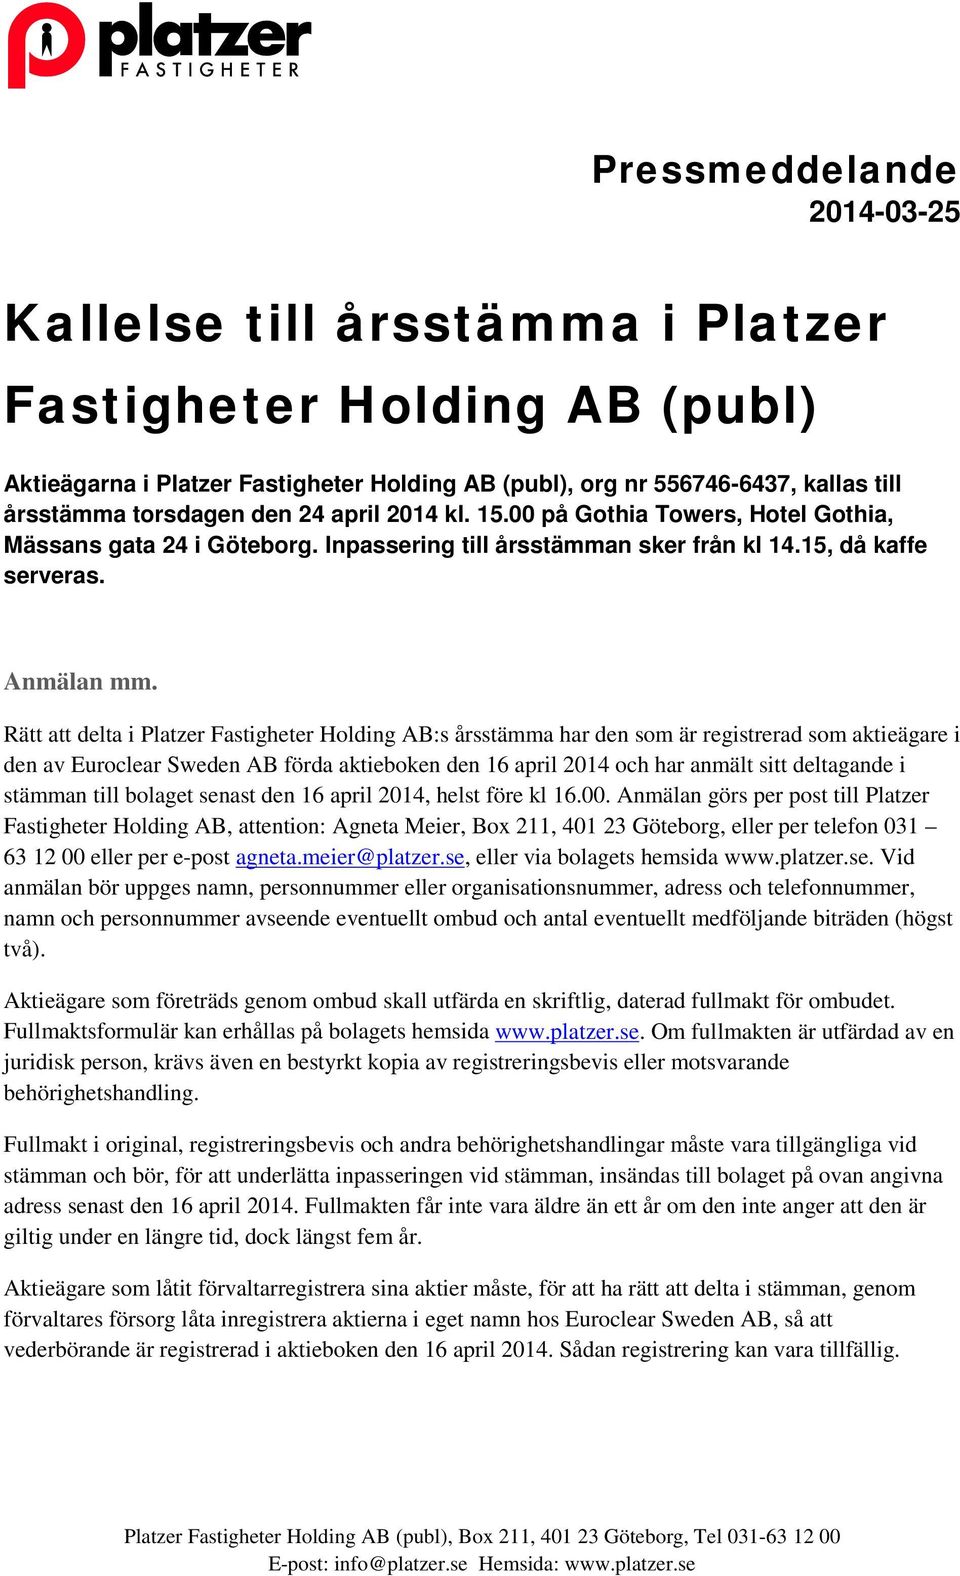 Rätt att delta i Platzer Fastigheter Holding AB:s årsstämma har den som är registrerad som aktieägare i den av Euroclear Sweden AB förda aktieboken den 16 april 2014 och har anmält sitt deltagande i